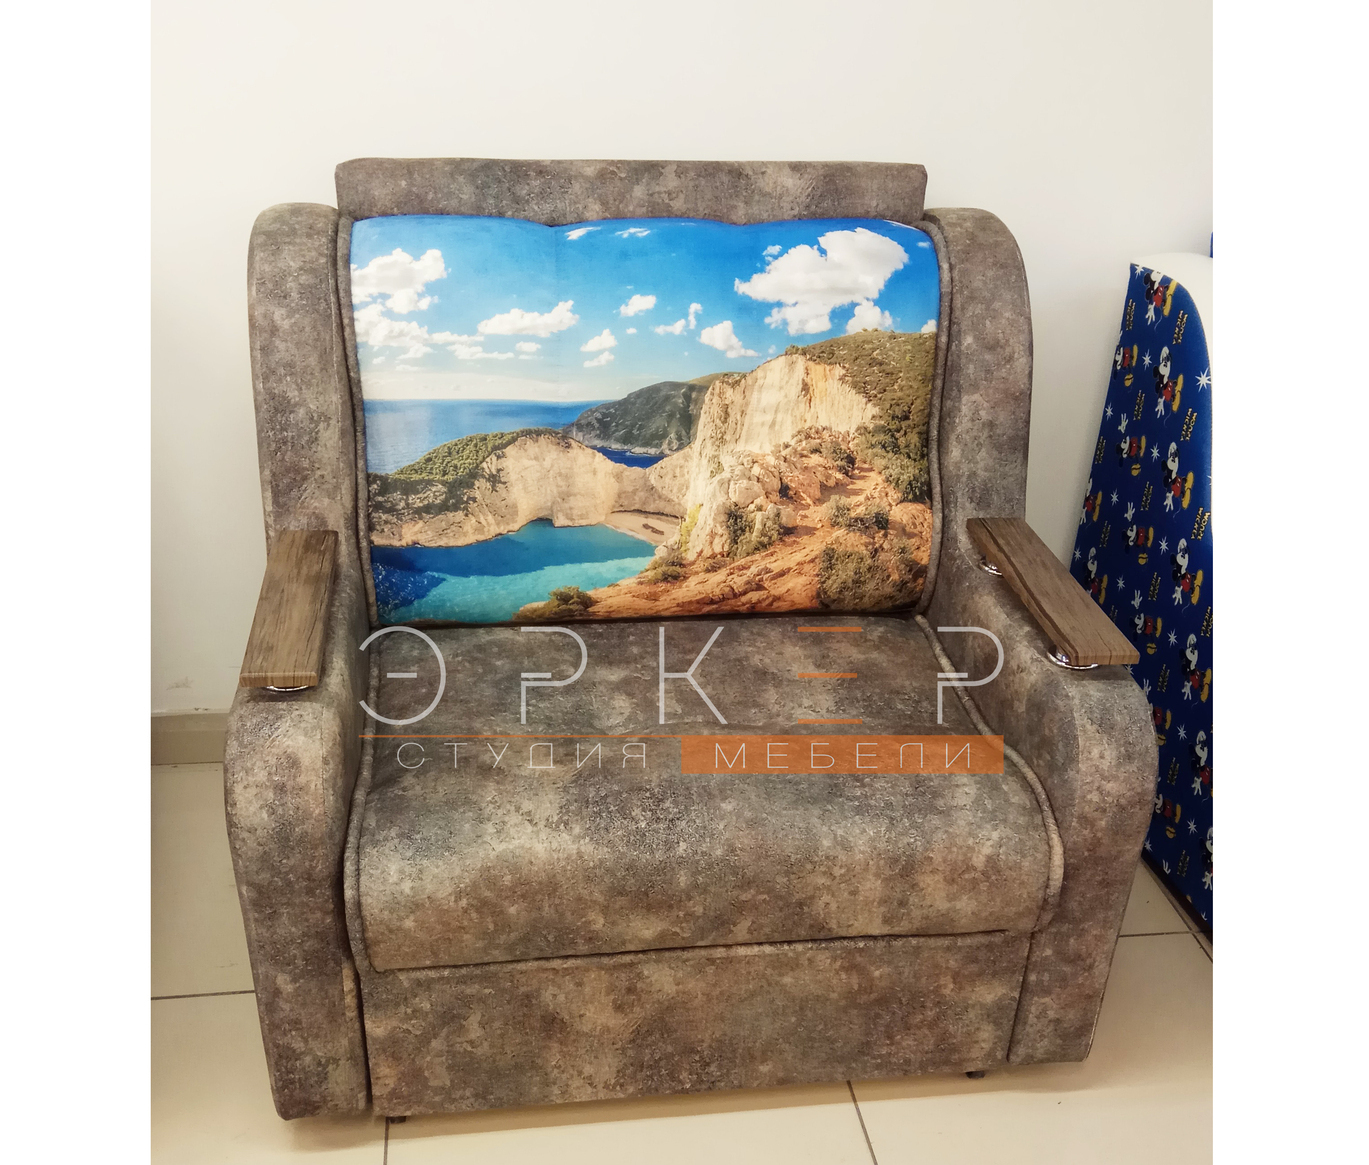 Раскладное кресло от производителя "Эркер студия мебели" тел. 8-902-142-0865